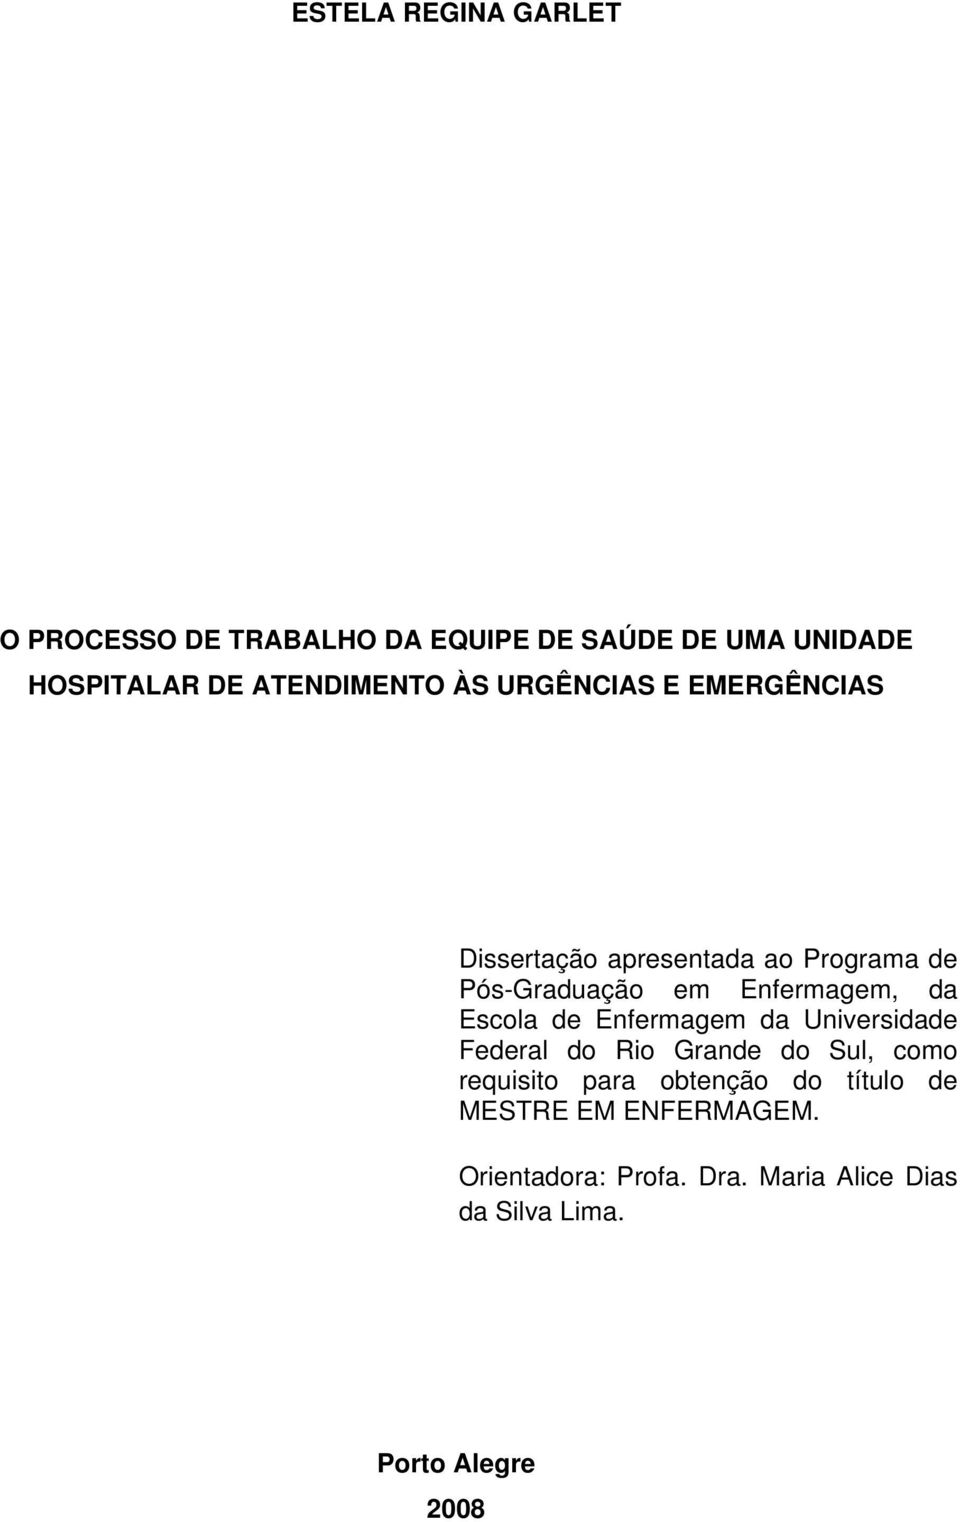 Enfermagem, da Escola de Enfermagem da Universidade Federal do Rio Grande do Sul, como requisito para